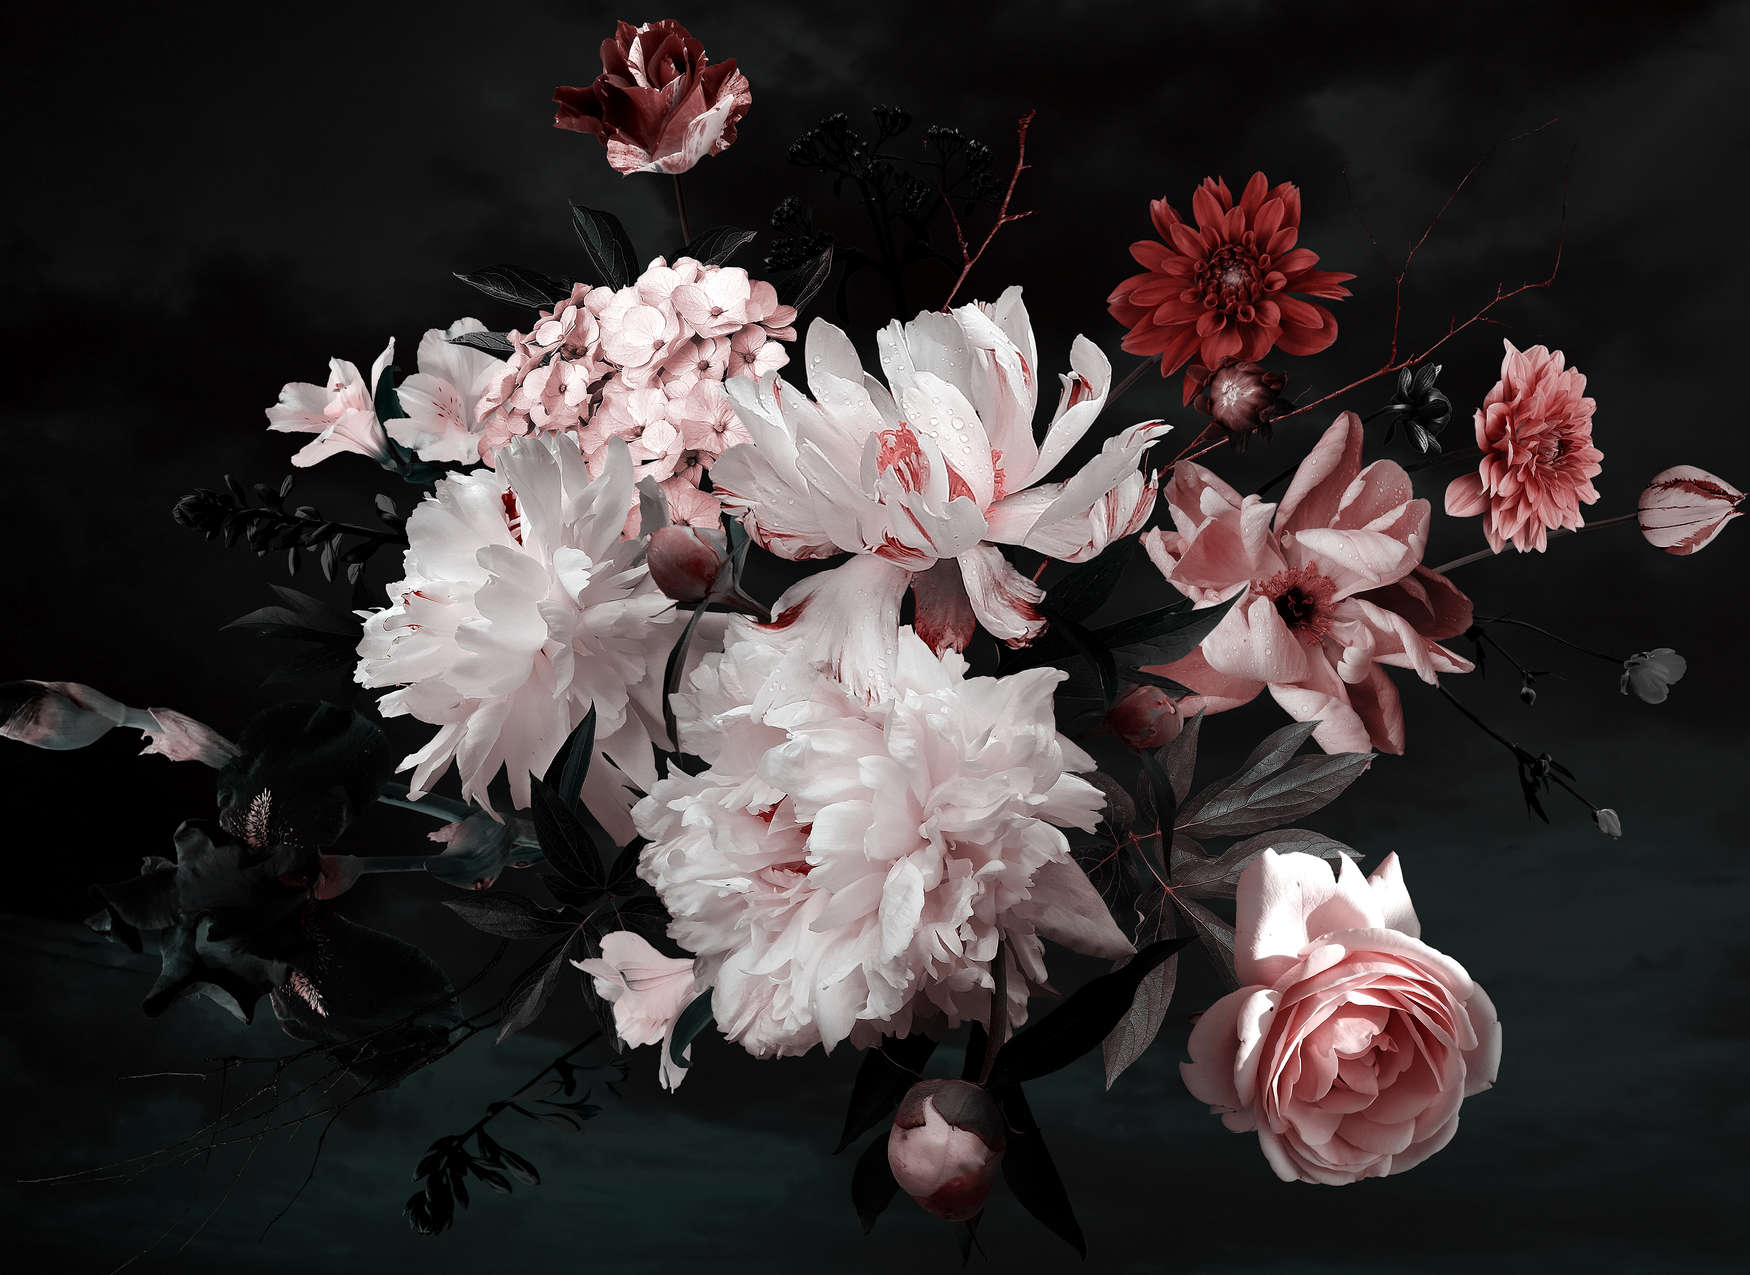             Blumenstrauß Fototapete – Weiß, Rosa, Schwarz
        